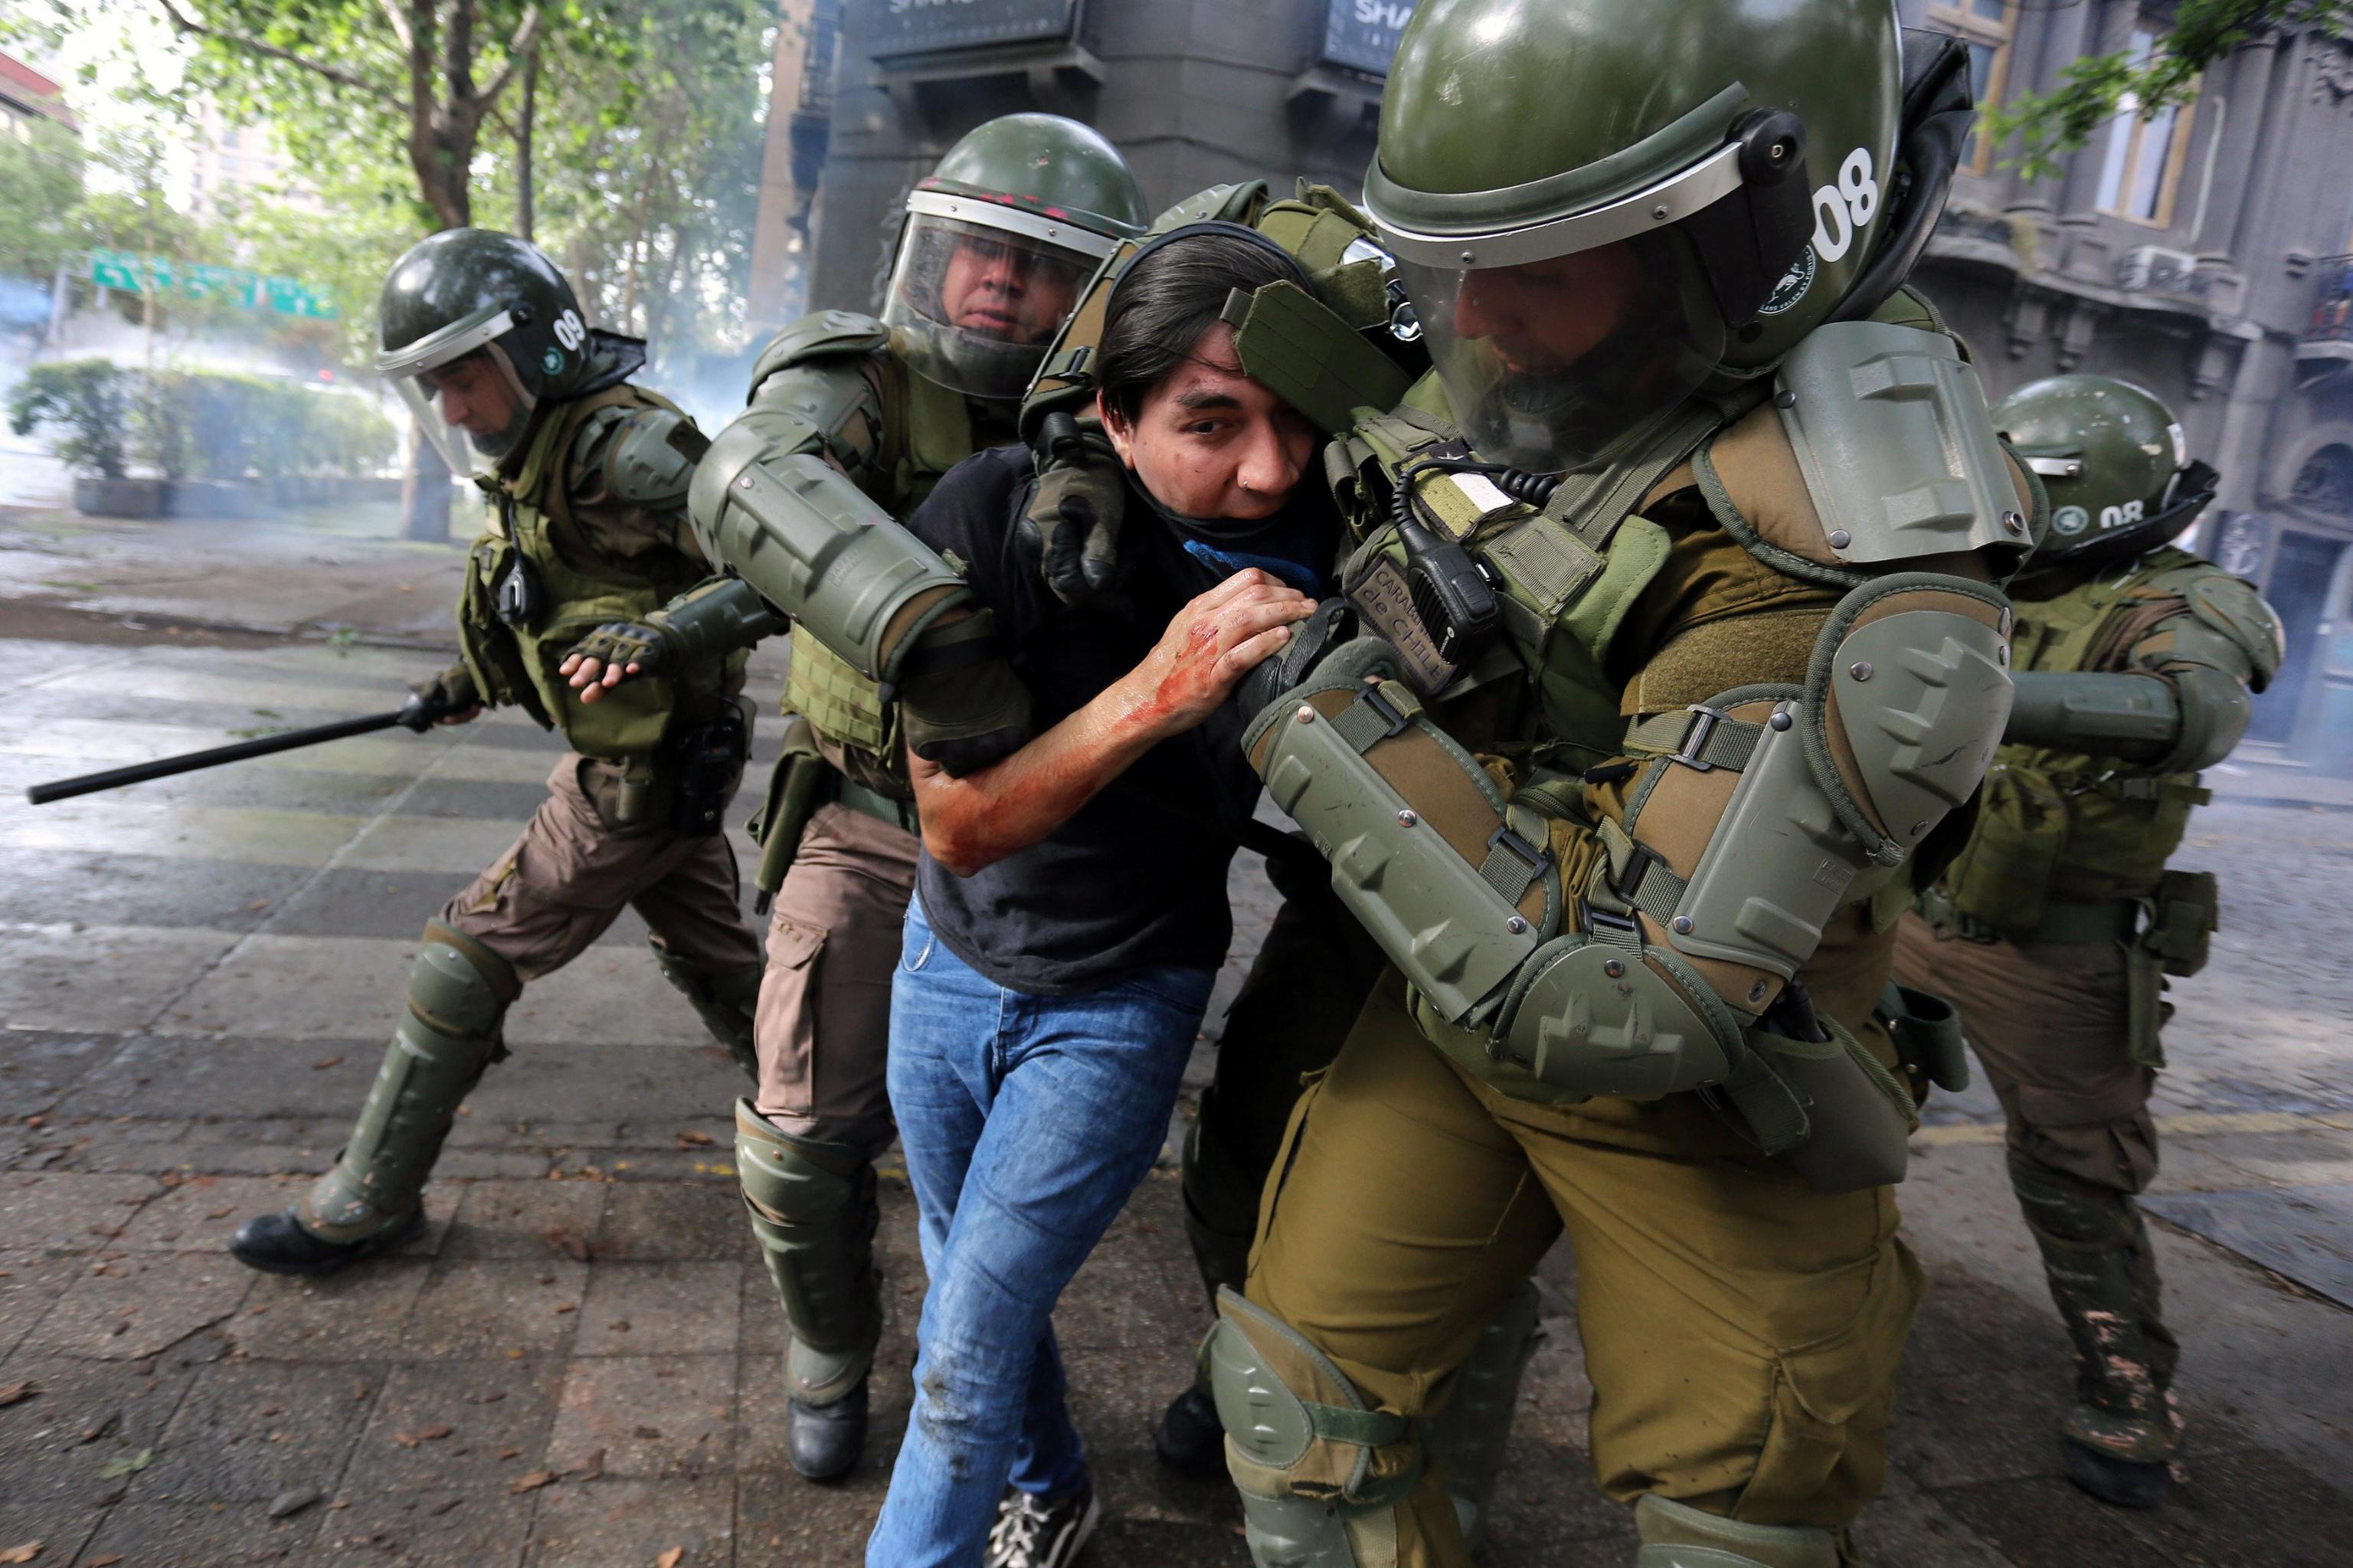 Un ragazzo viene portato via dalle forze dell'ordine durante le proteste